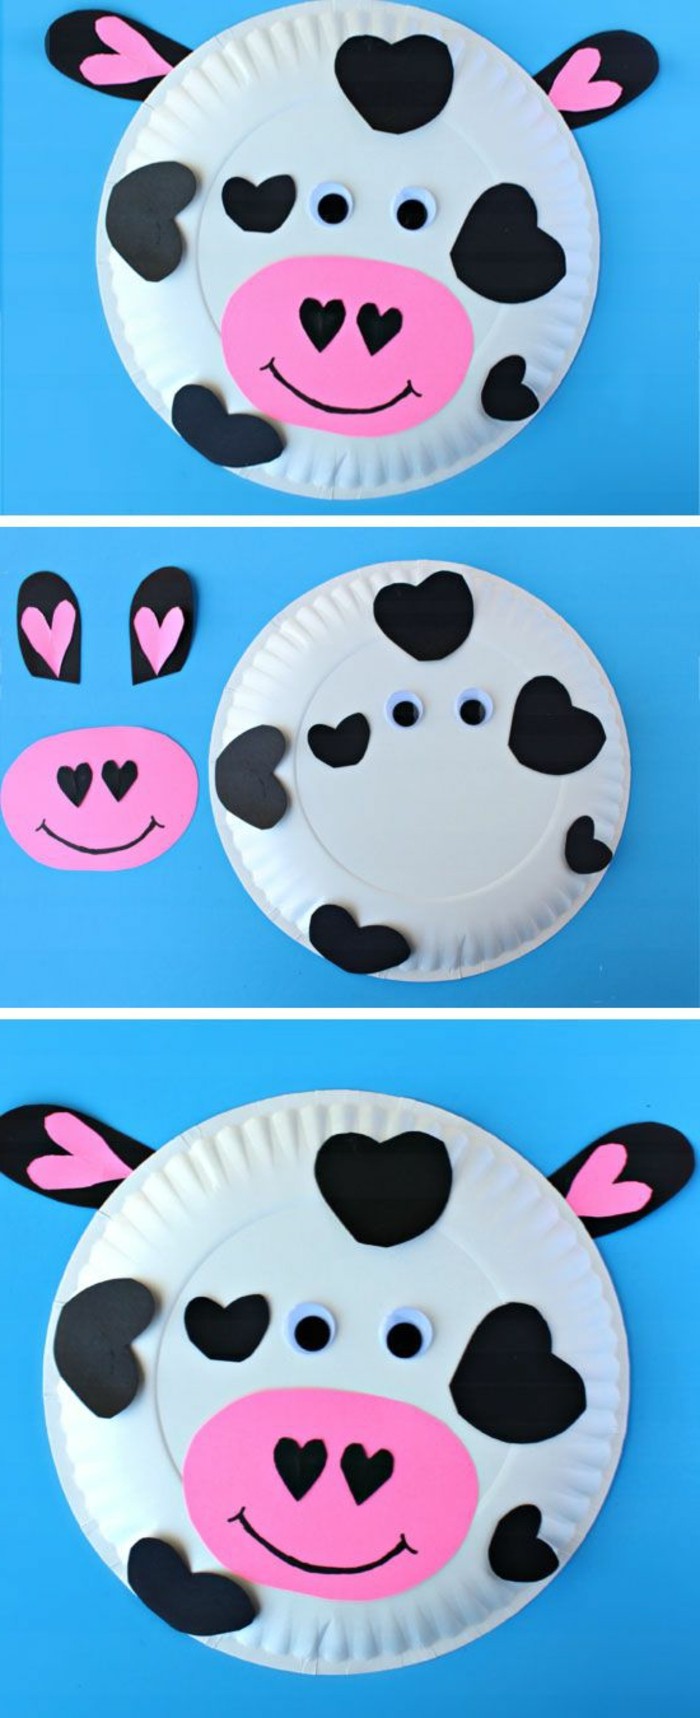 une assiette en papier transformée en vache à taches noires en papier, museau rose en papier, idée activité manuelle maternelle